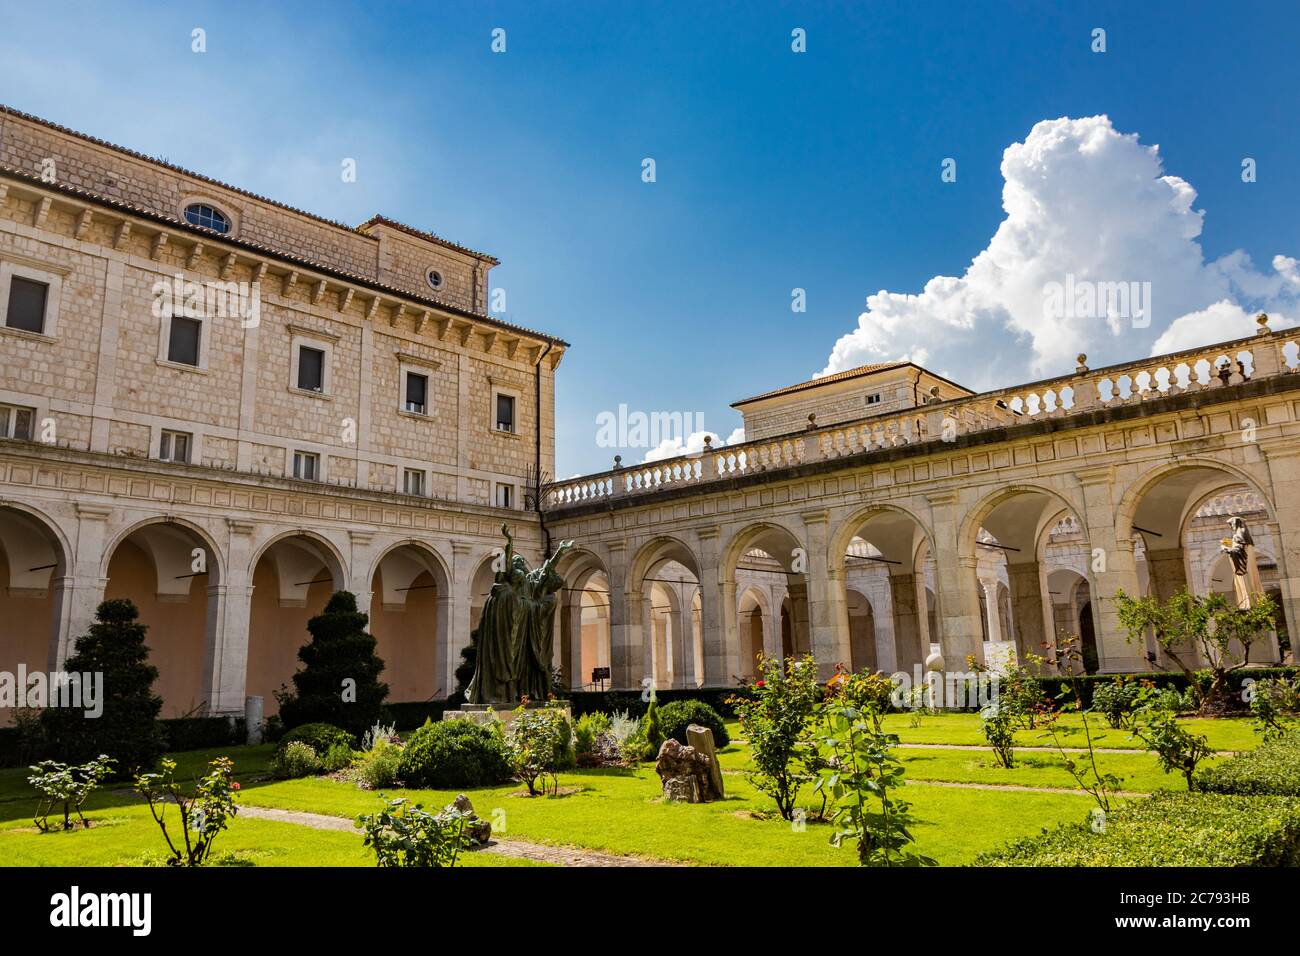 3 juillet 2020 - Abbaye de Montecassino, Cassino, Italie - le monastère bénédictin situé au sommet de Montecassino est le plus ancien monastère d'Italie. Le CLO Banque D'Images